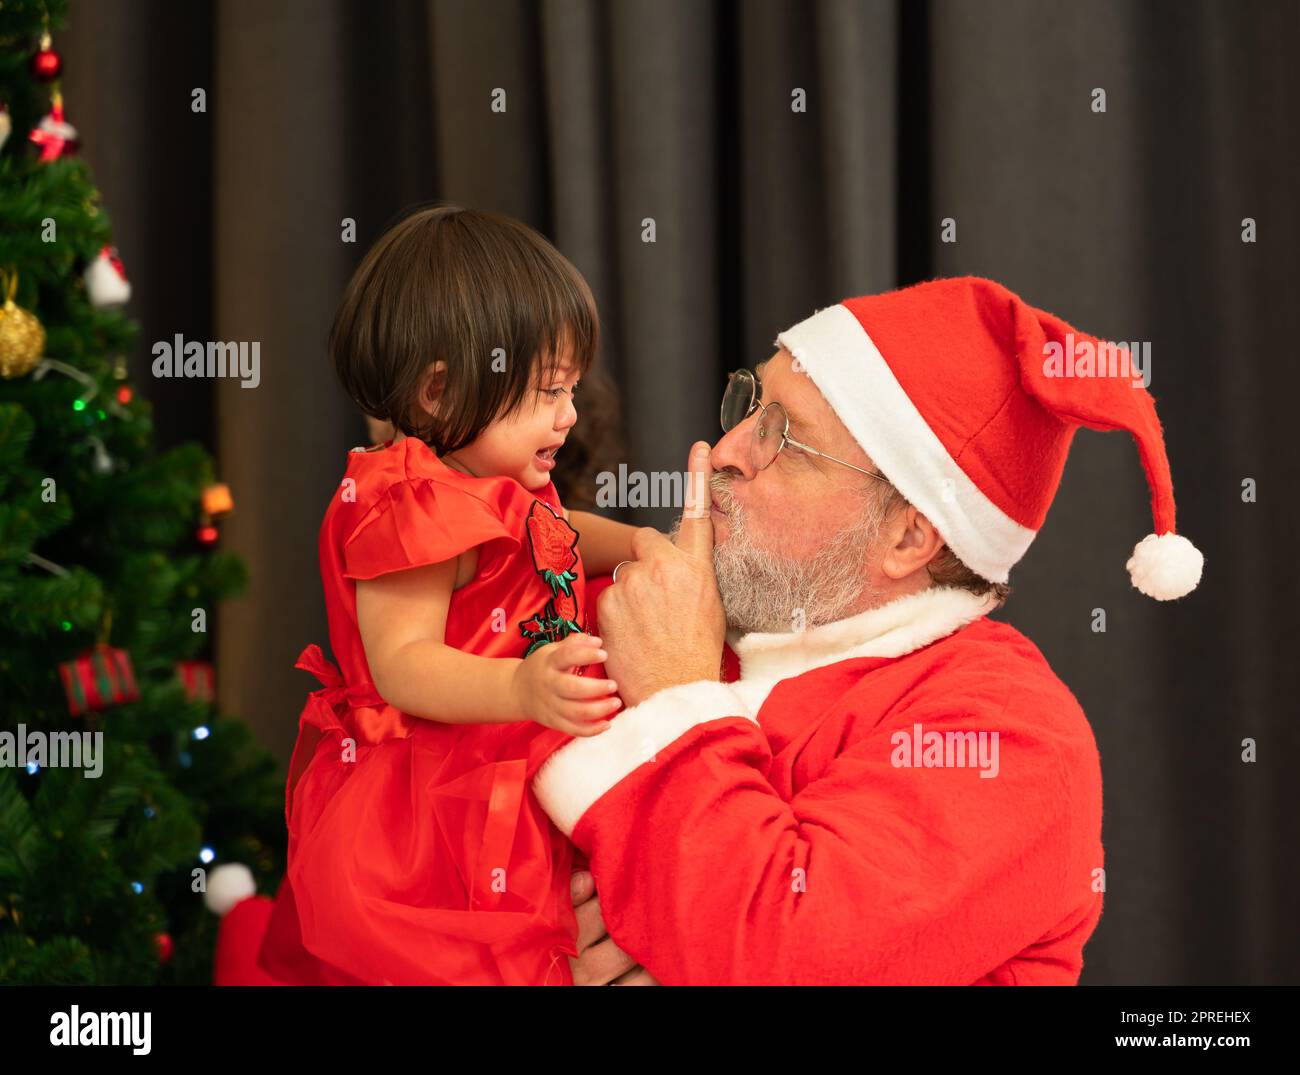 Babbo Natale che indossa il costume rosso che tiene l'indice dalla sua bocca mentre cerca di conforto urlando bambina piangente vicino all'albero di Natale nel roo vivente Foto Stock